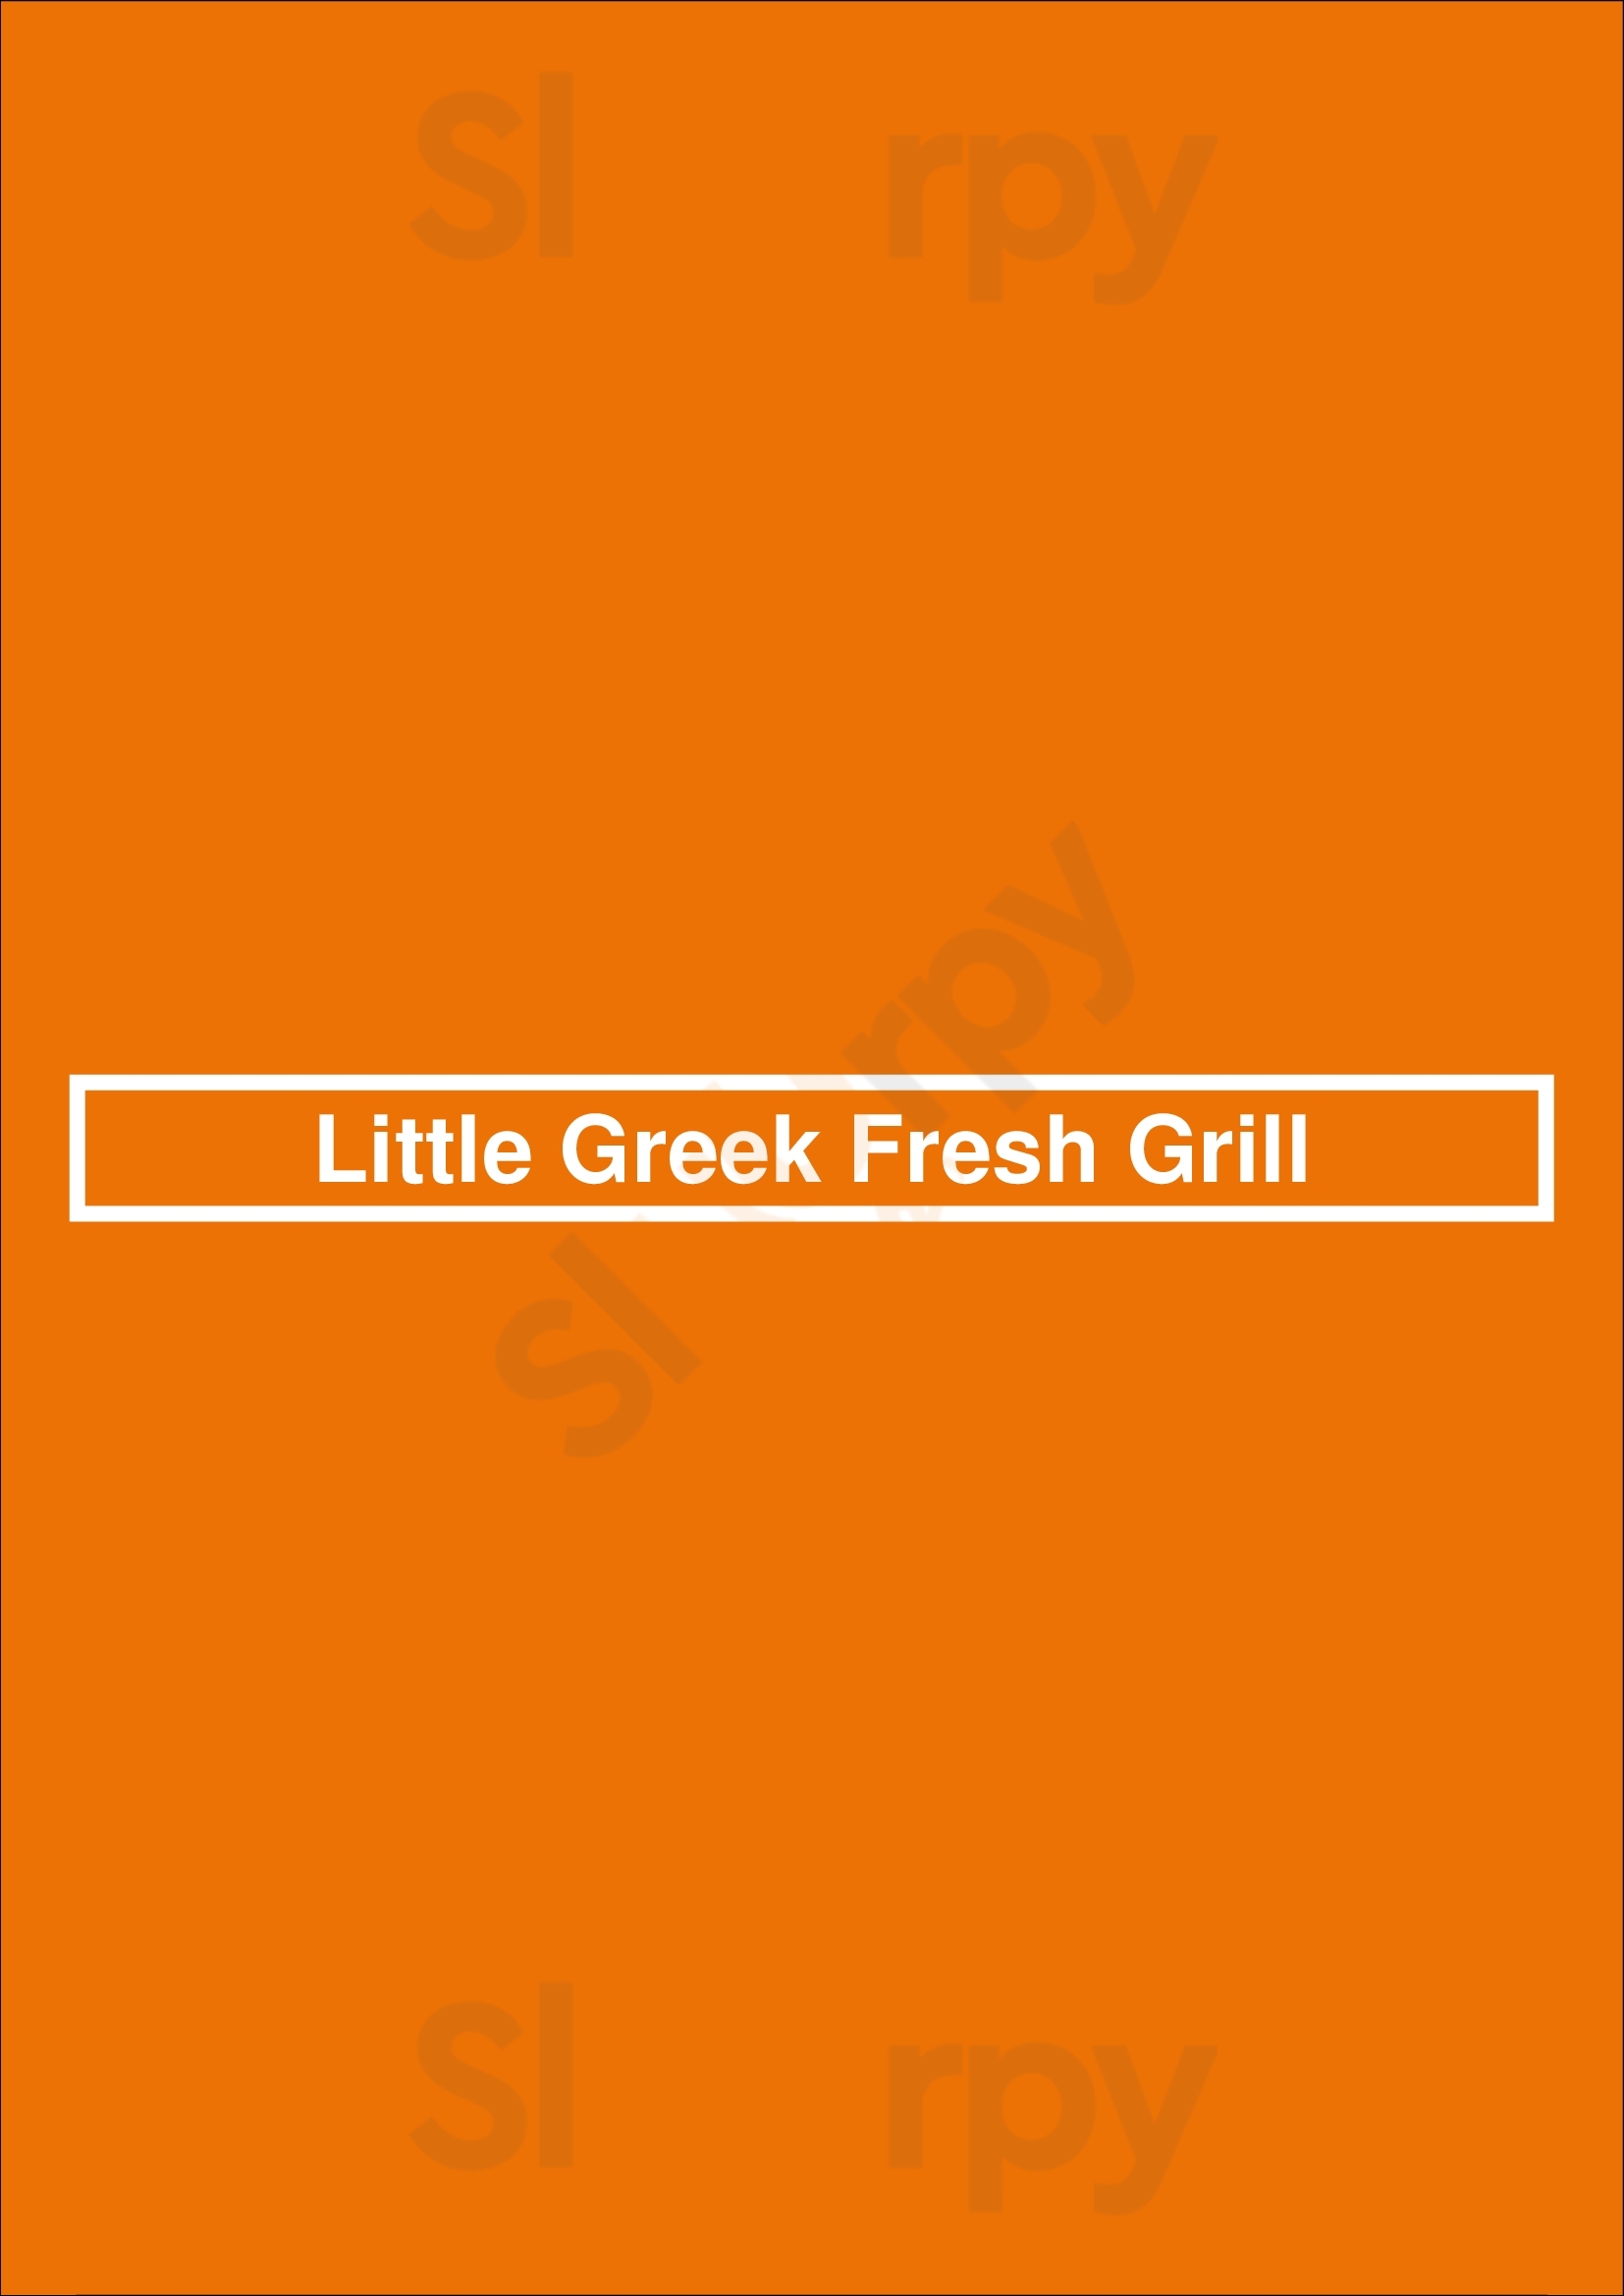 Little Greek Fresh Grill Tampa Menu - 1